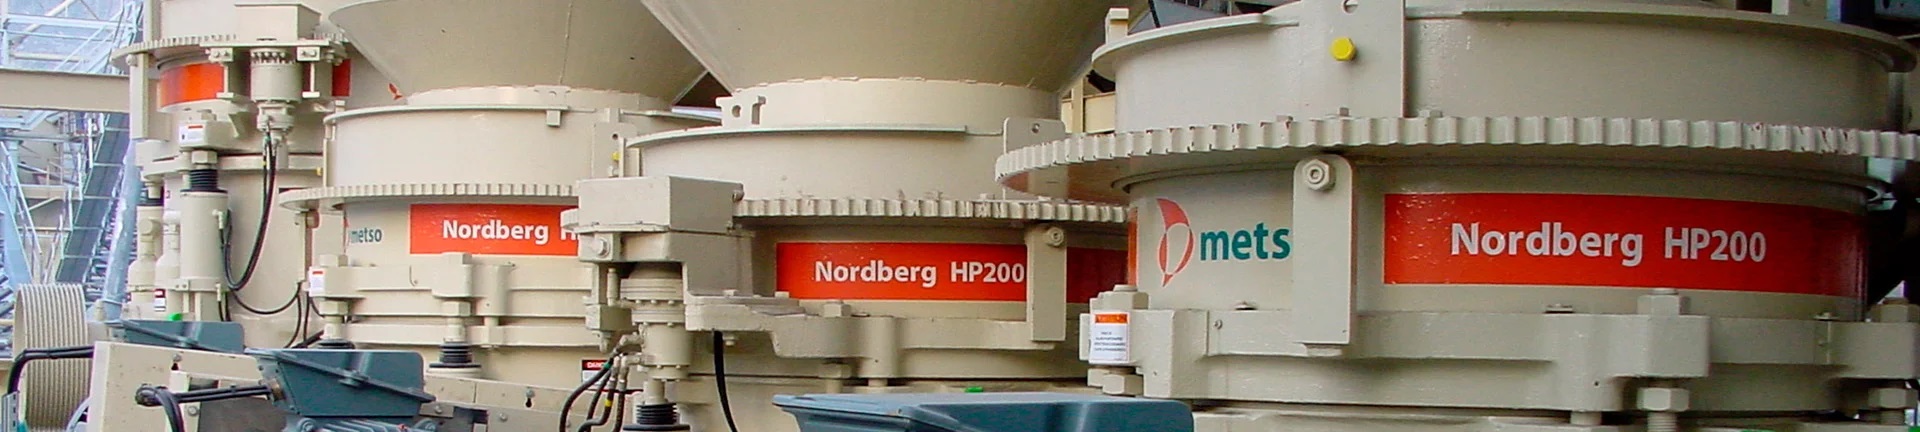 hp200 - metso nordberg hp200 - China metso nordberg cone crusher